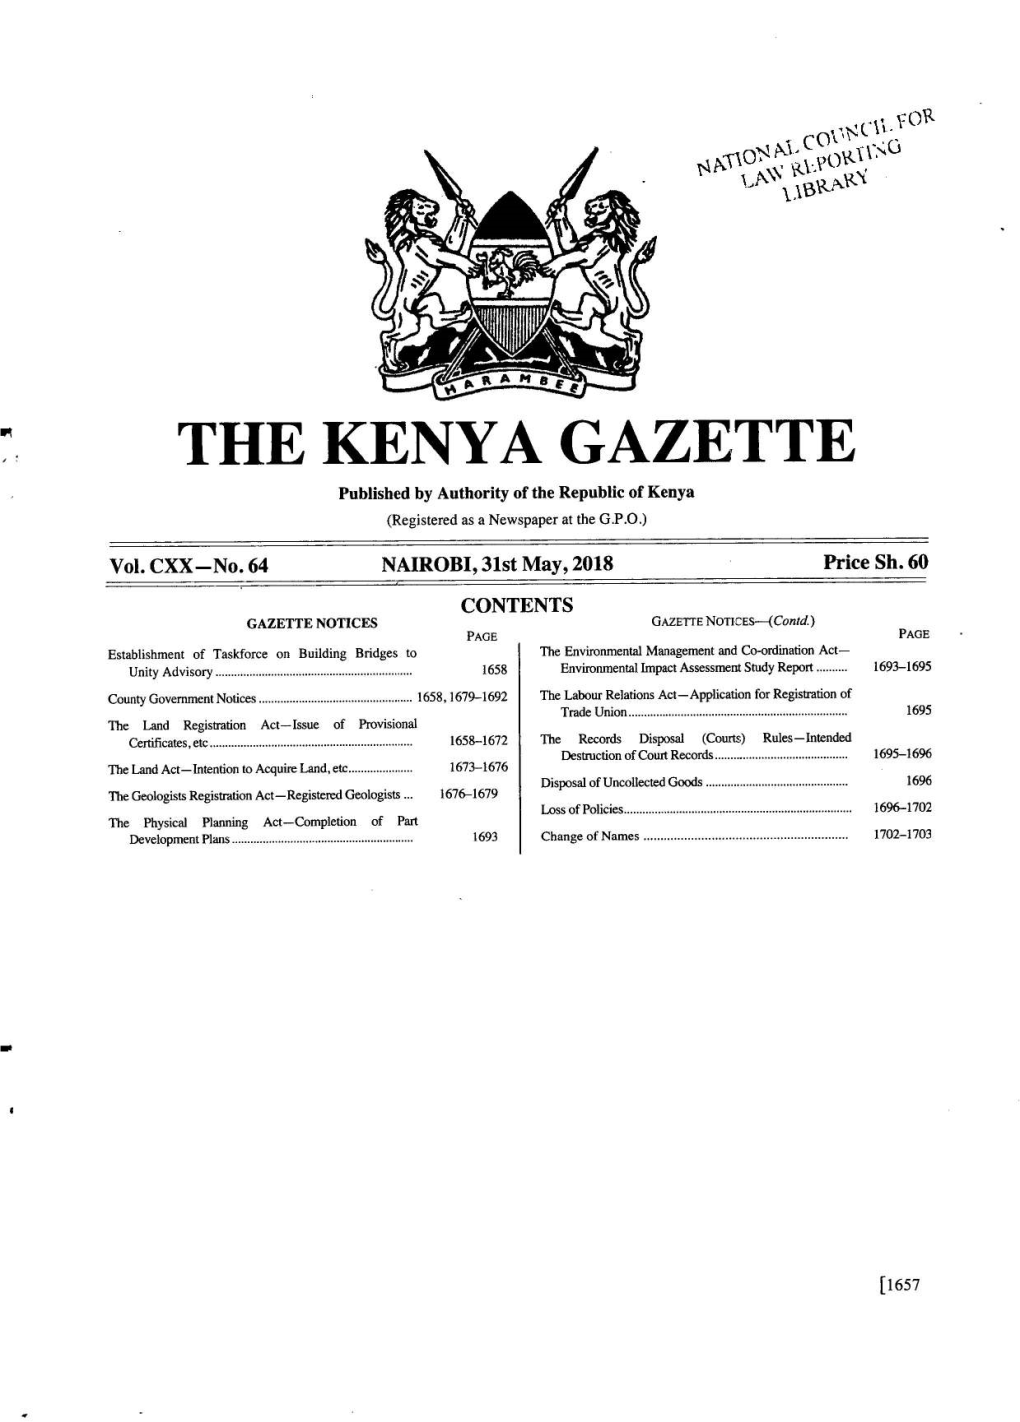 The Kenya Gazette